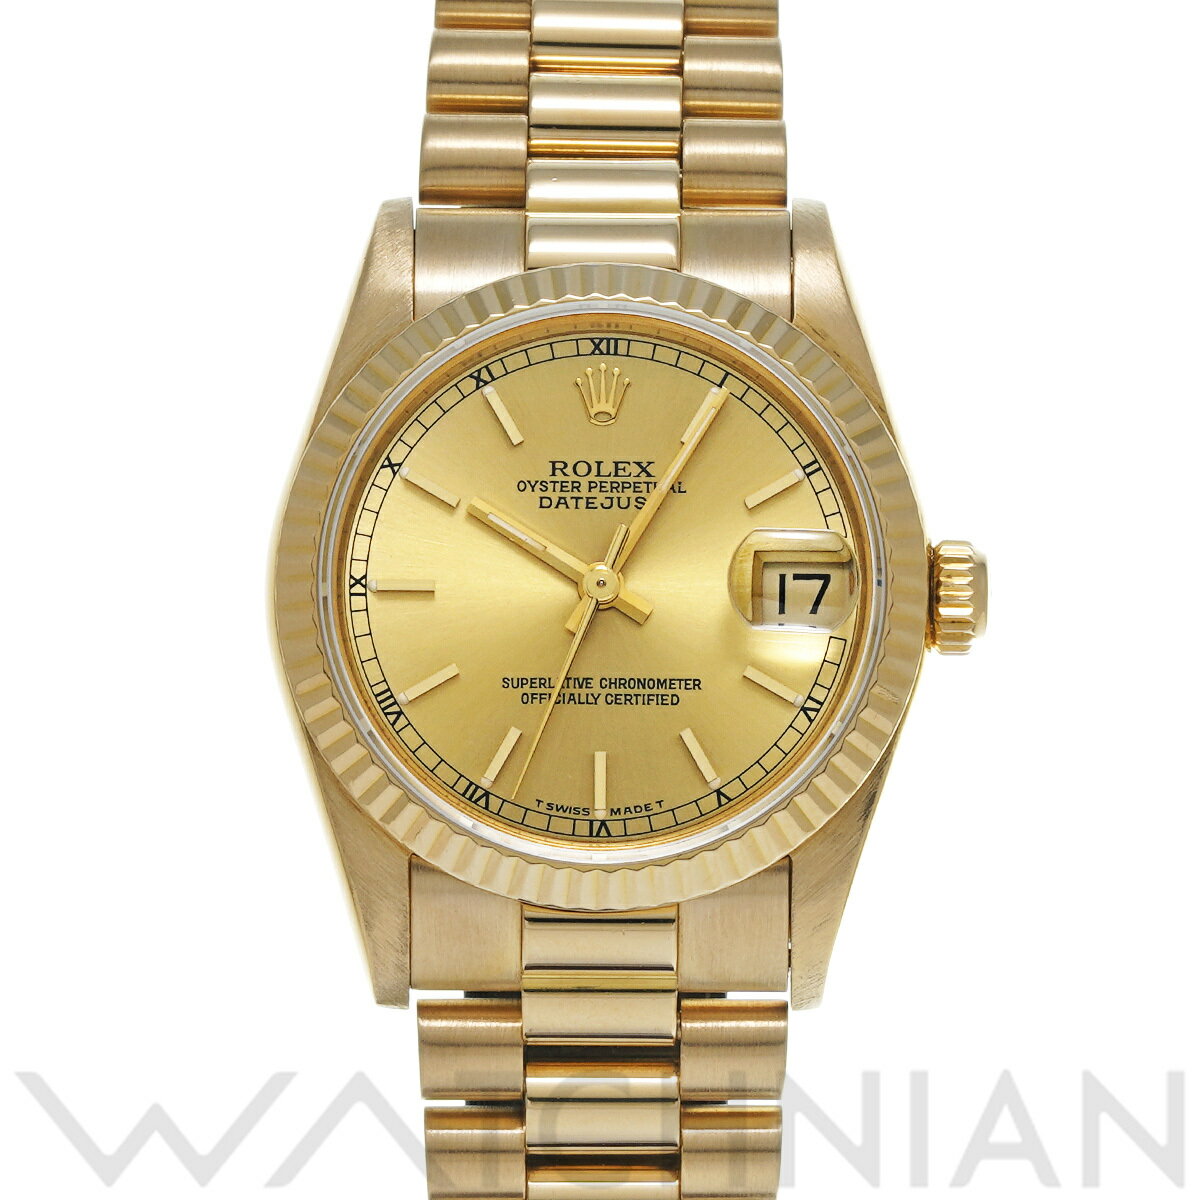 【ローン60回払い無金利】【中古】 ロレックス ROLEX デイトジャスト 68278 L番(1989年頃製造) シャンパン ユニセックス 腕時計 ロレックス 時計 高級腕時計 ブランド